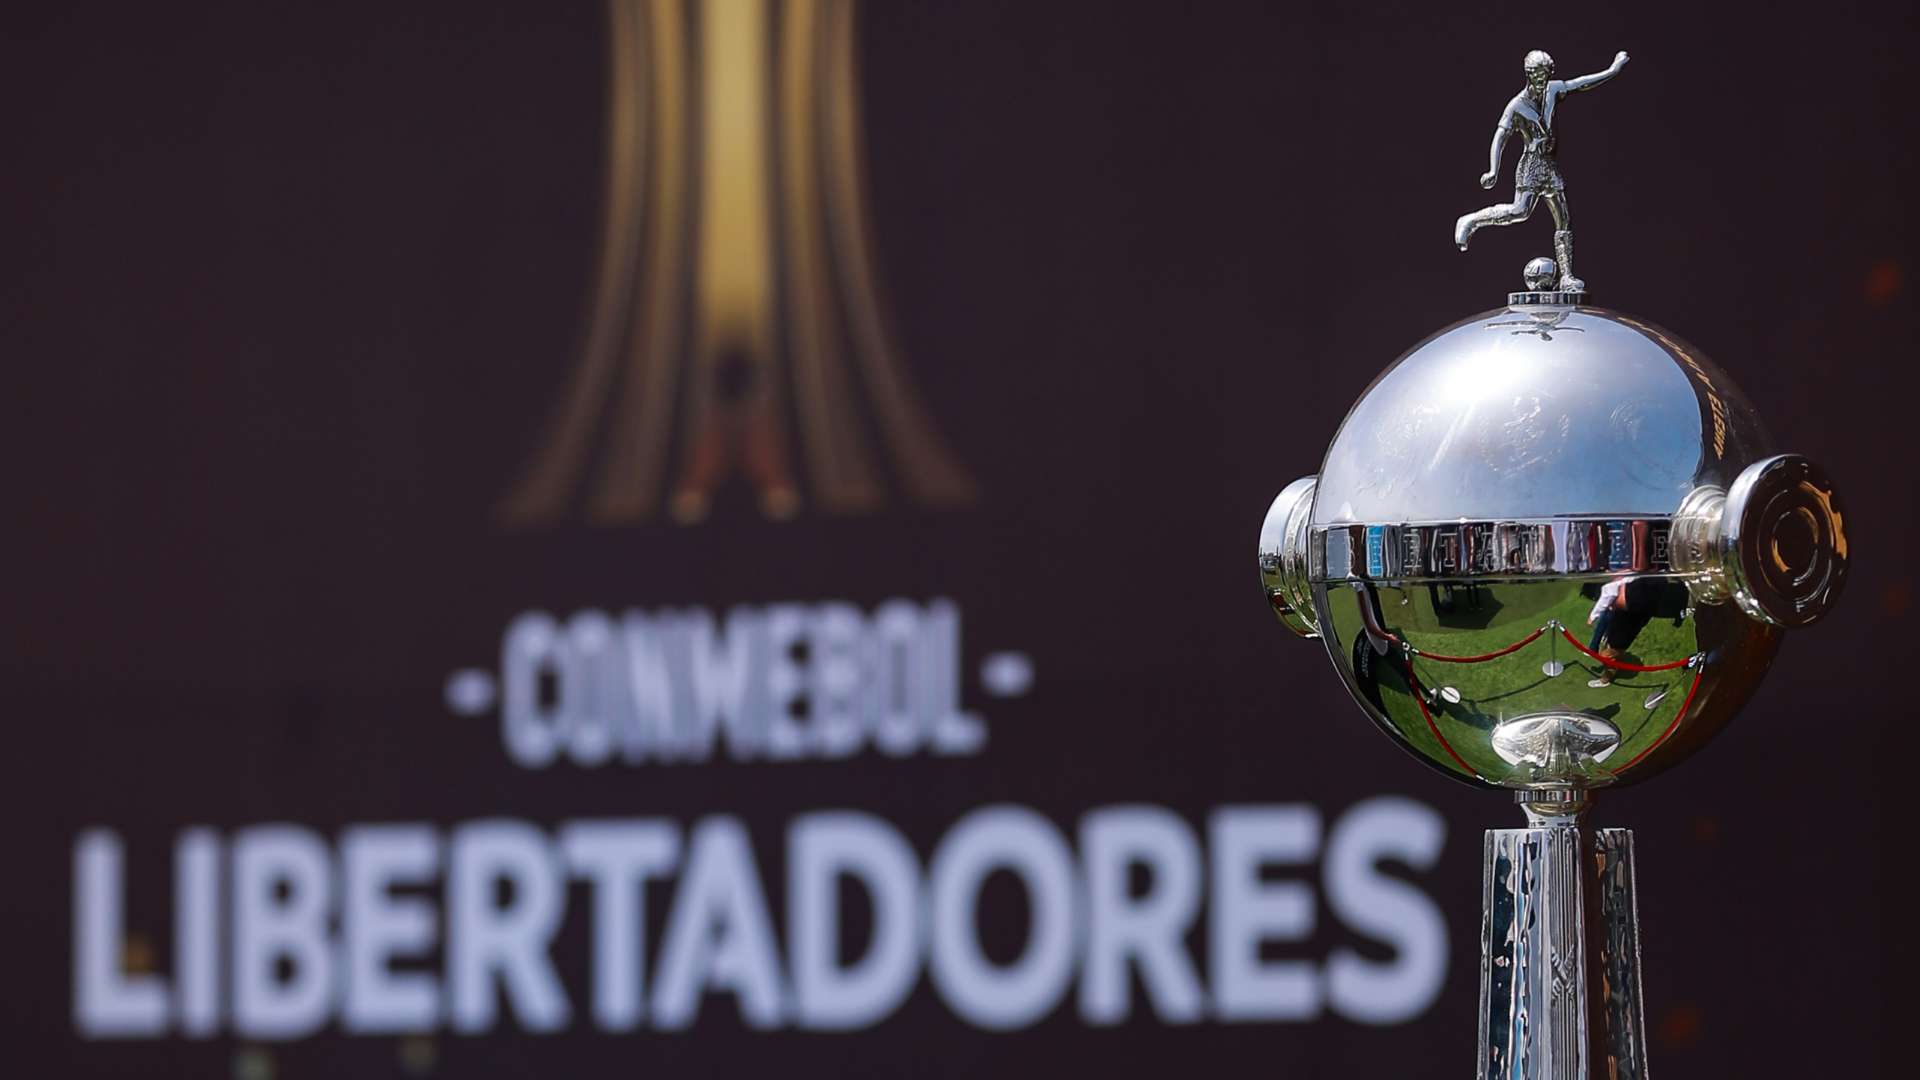 Copa Libertadores trophy general